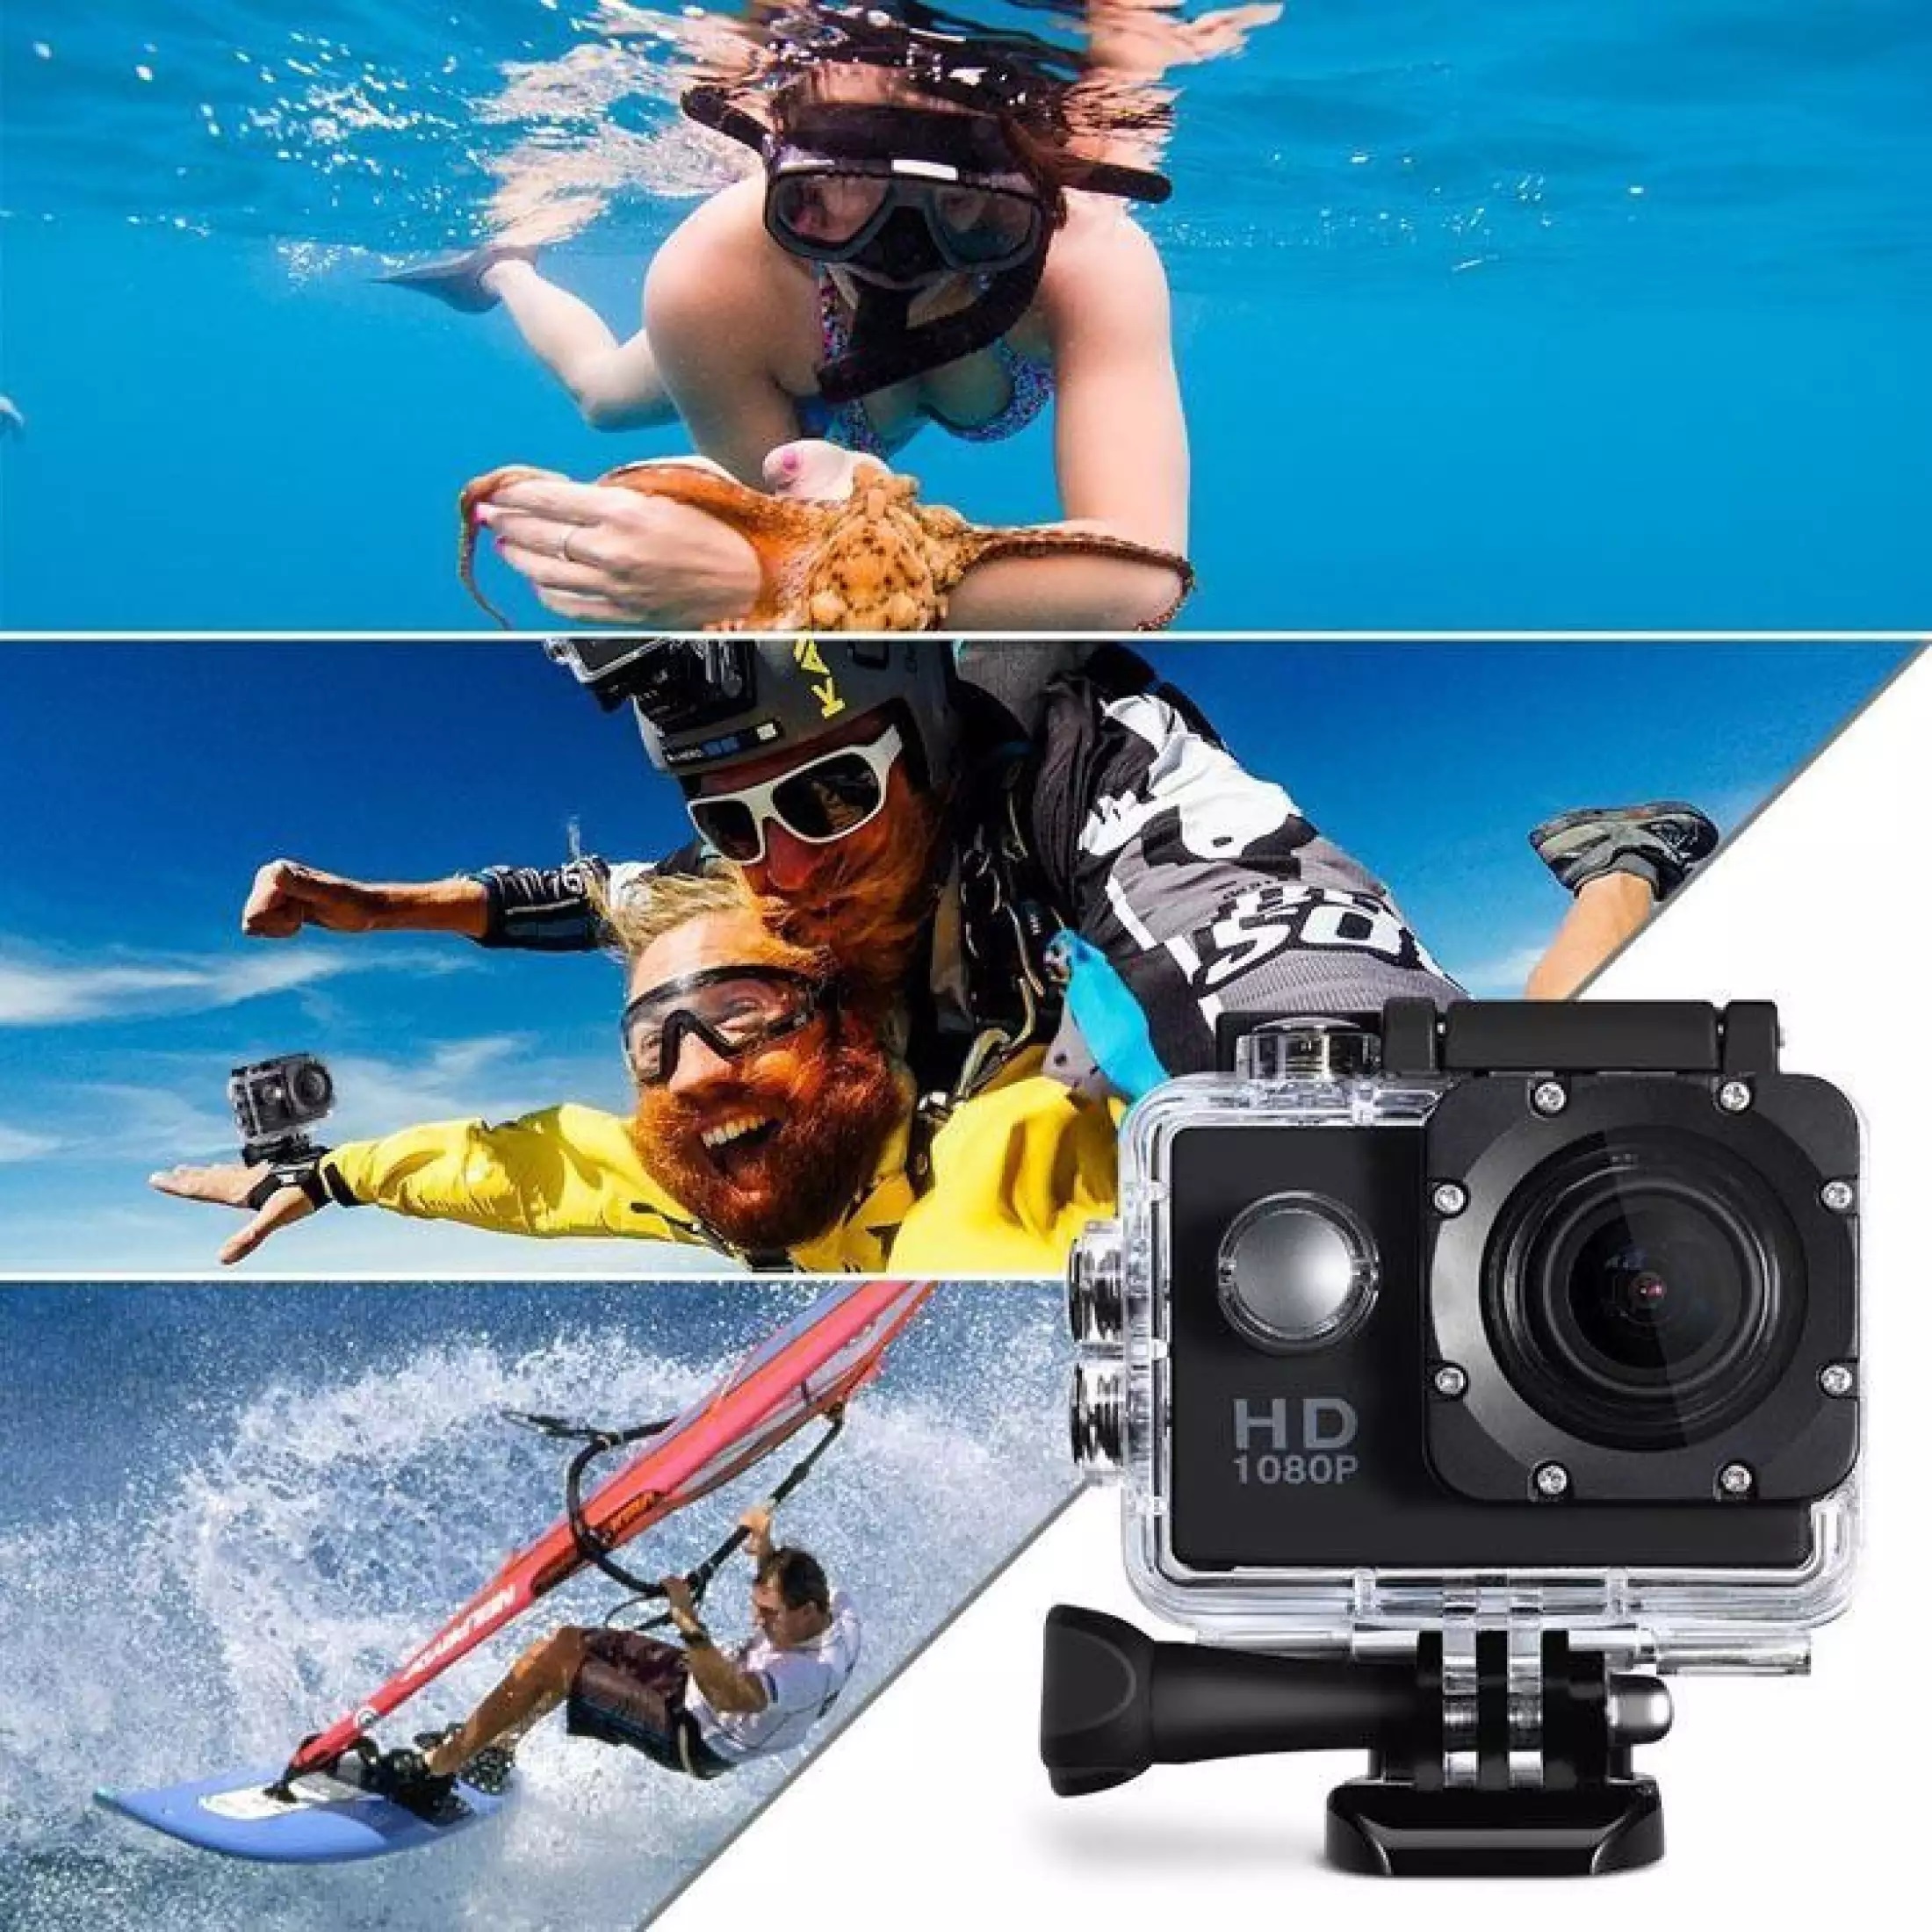 ข้อมูลประกอบของ ขายดีสุด กล้องกันน้ำ ถ่ายใต้น้ำ กล้องกลางแจ้ง กล้อง Action Camera 4K กล้องติดหมวกกันน็อค